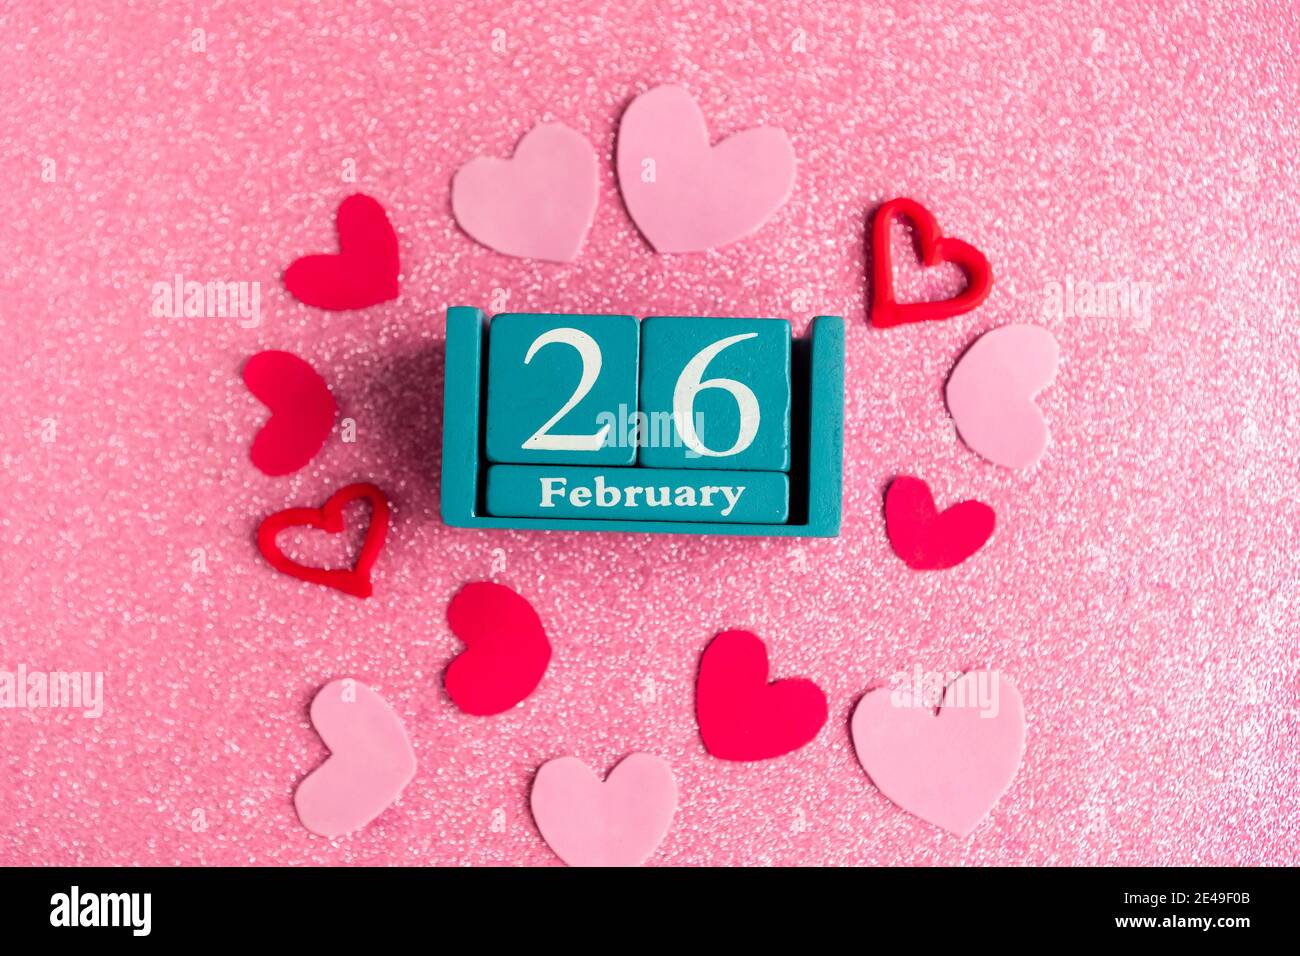 Février 26. Calendrier cube bleu avec mois et date et décorations sur fond rose scintillant. Banque D'Images